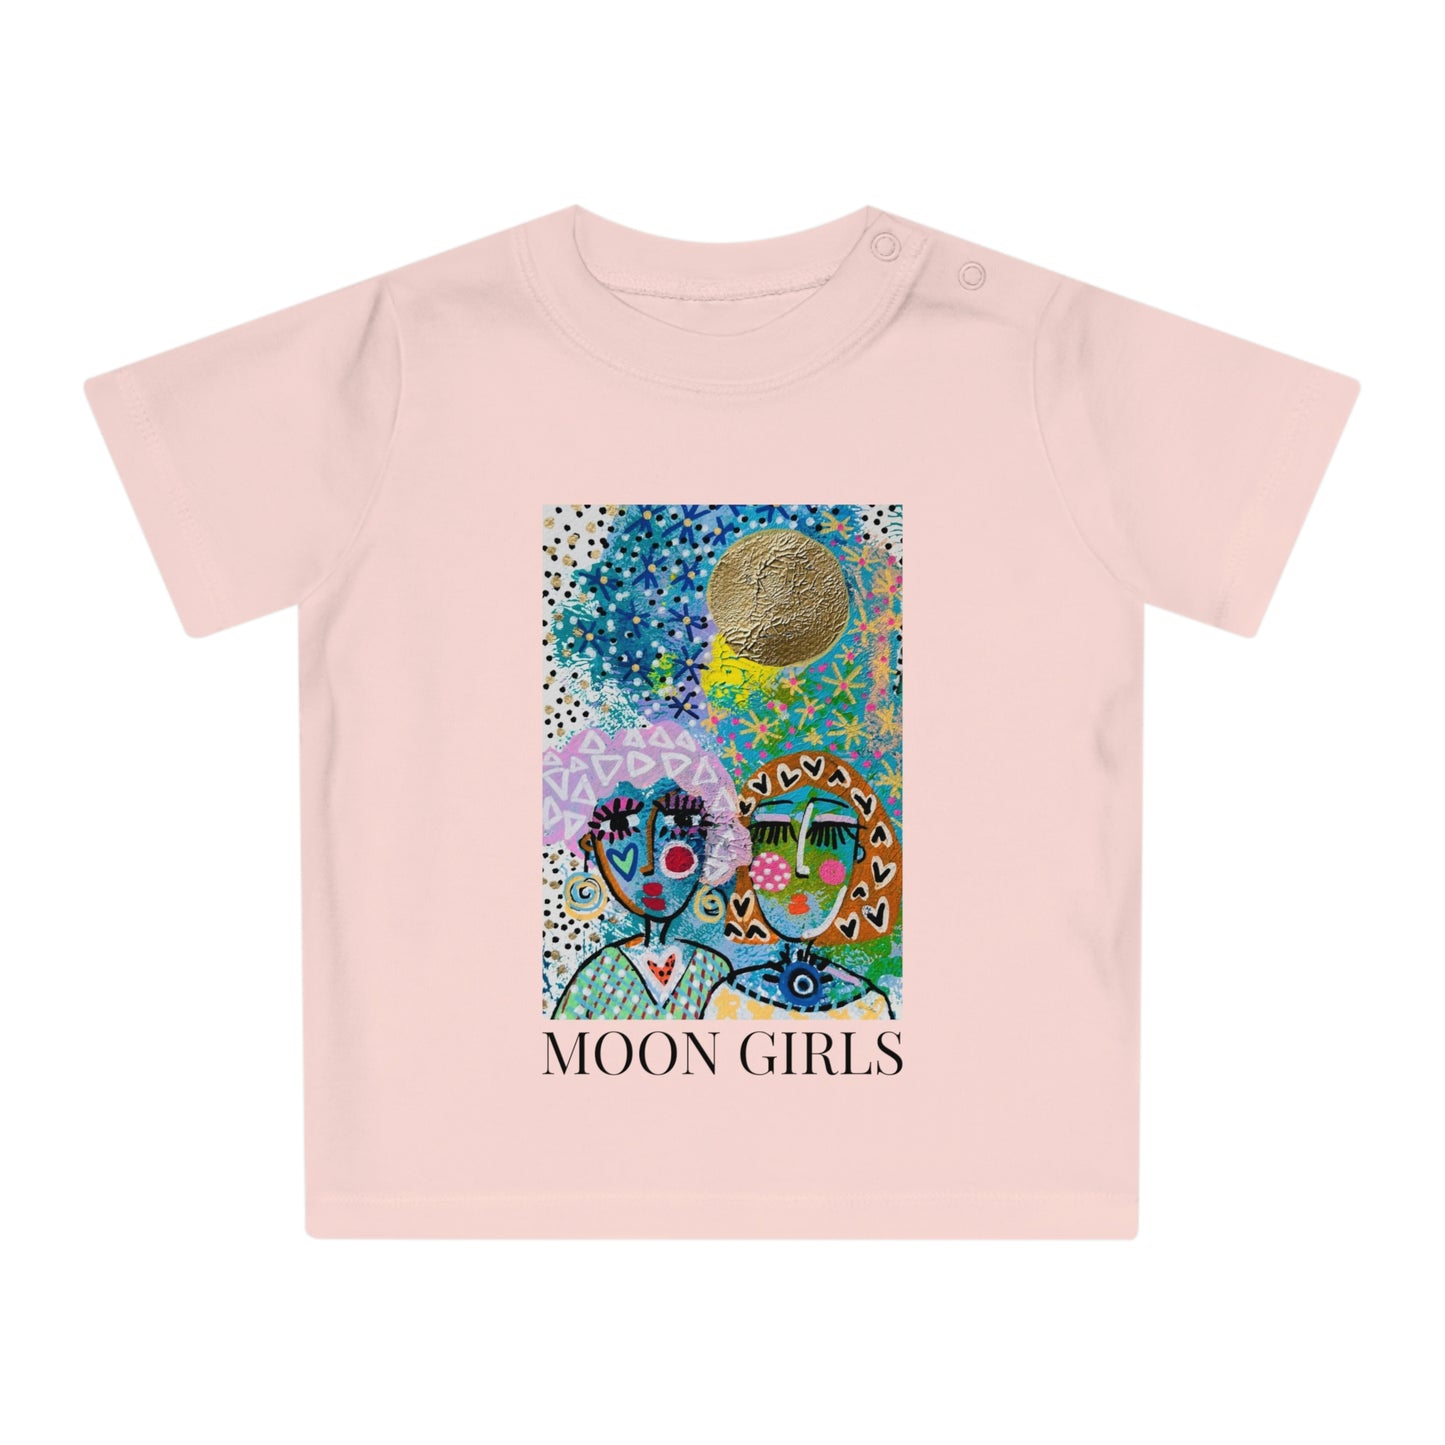 "MOON GIRLS" Girl Talk Art Baby T-Shirt